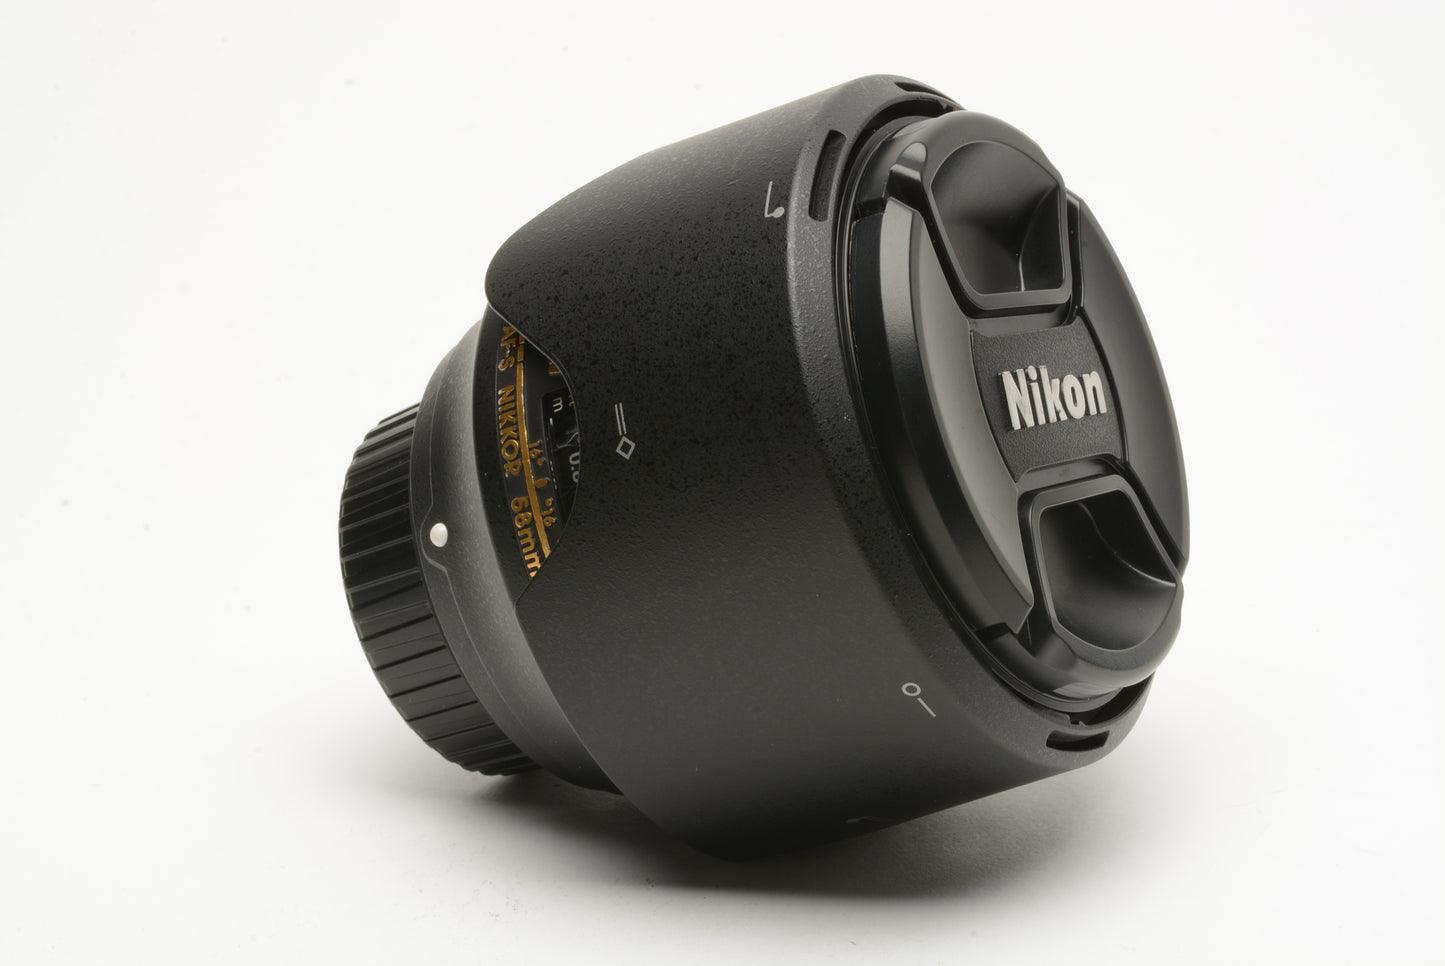 Nikon AF-S Nikkor 58mm F1.4G N SWM Aspherical lens, USA, hood+caps, Clean!